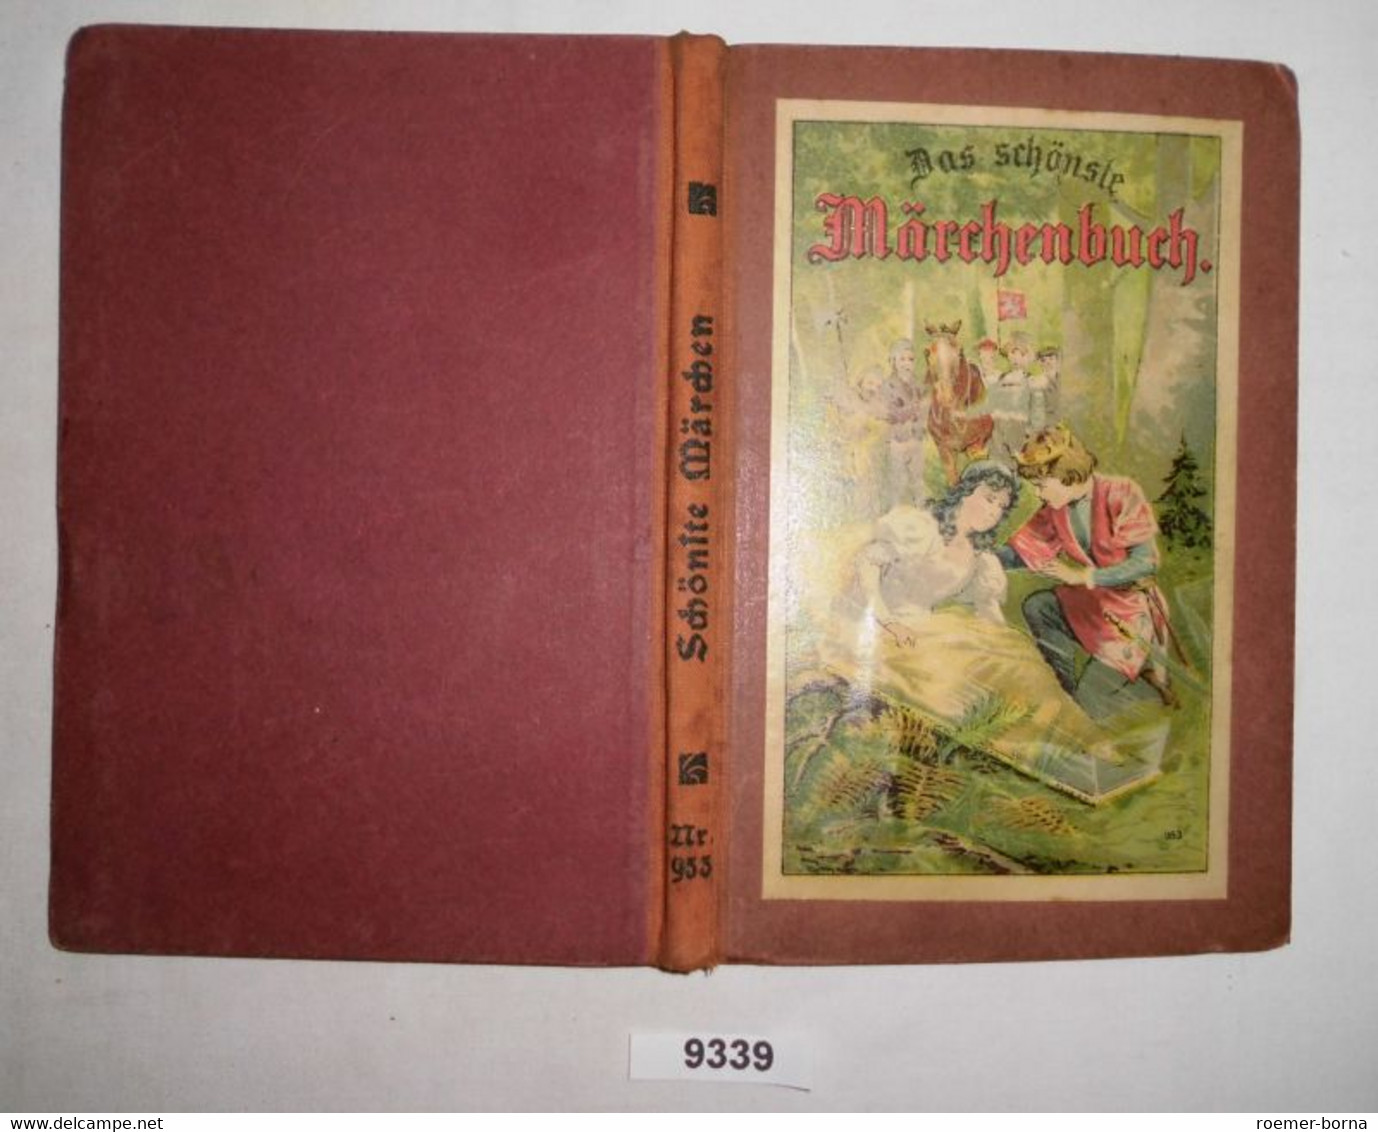 Das Schönste Märchenbuch Für Kinder - Tales